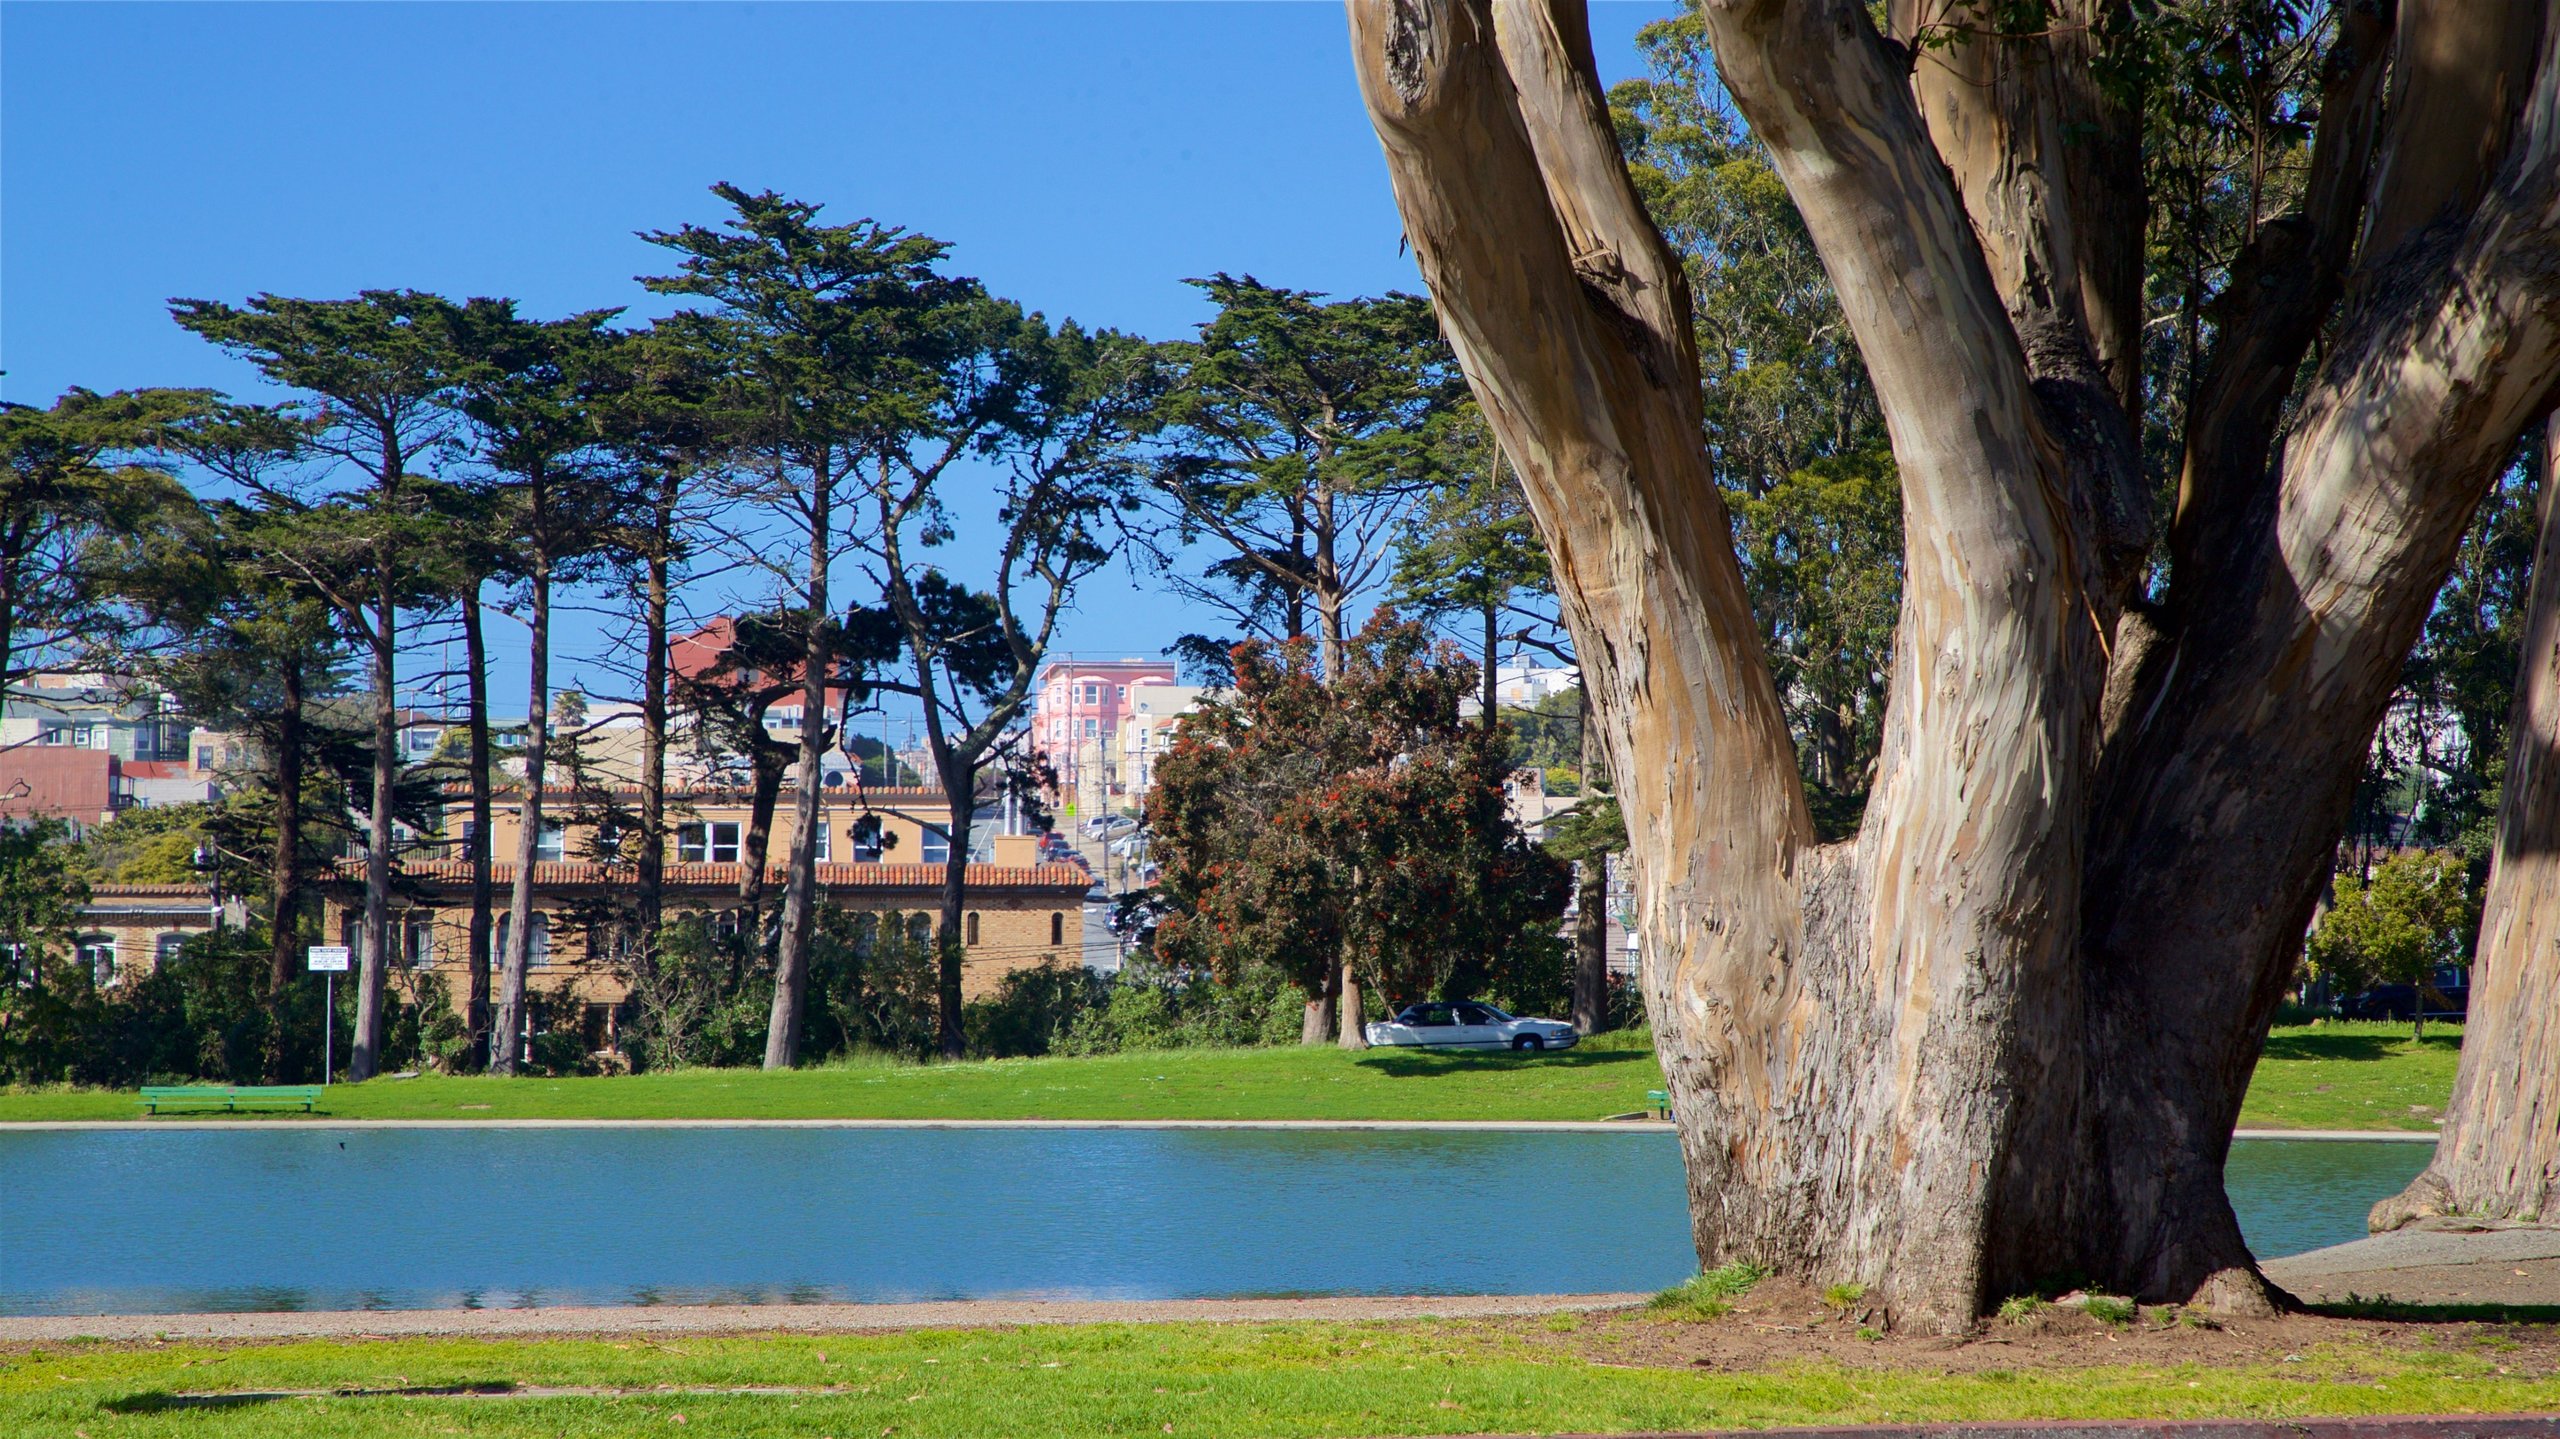 Công viên Golden Gate là điểm đến quen thuộc của nhiều du khách